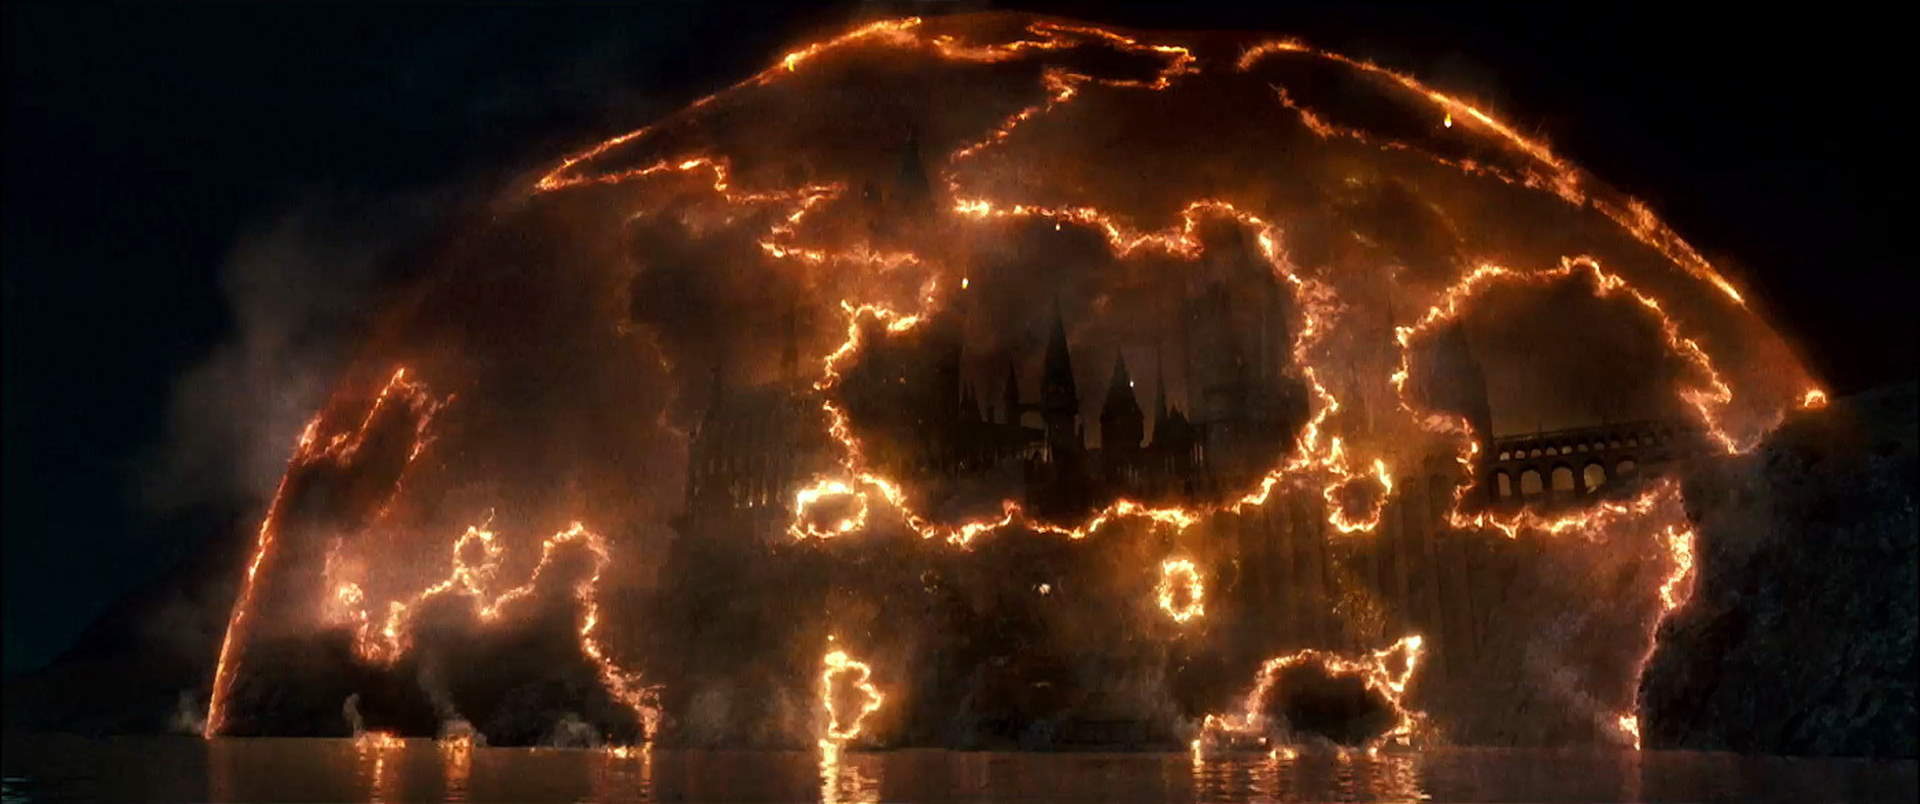 Harry Potter 7.1 und die Heiligtümer des Todes (Teil 1) - Szenenbild 17 von 23